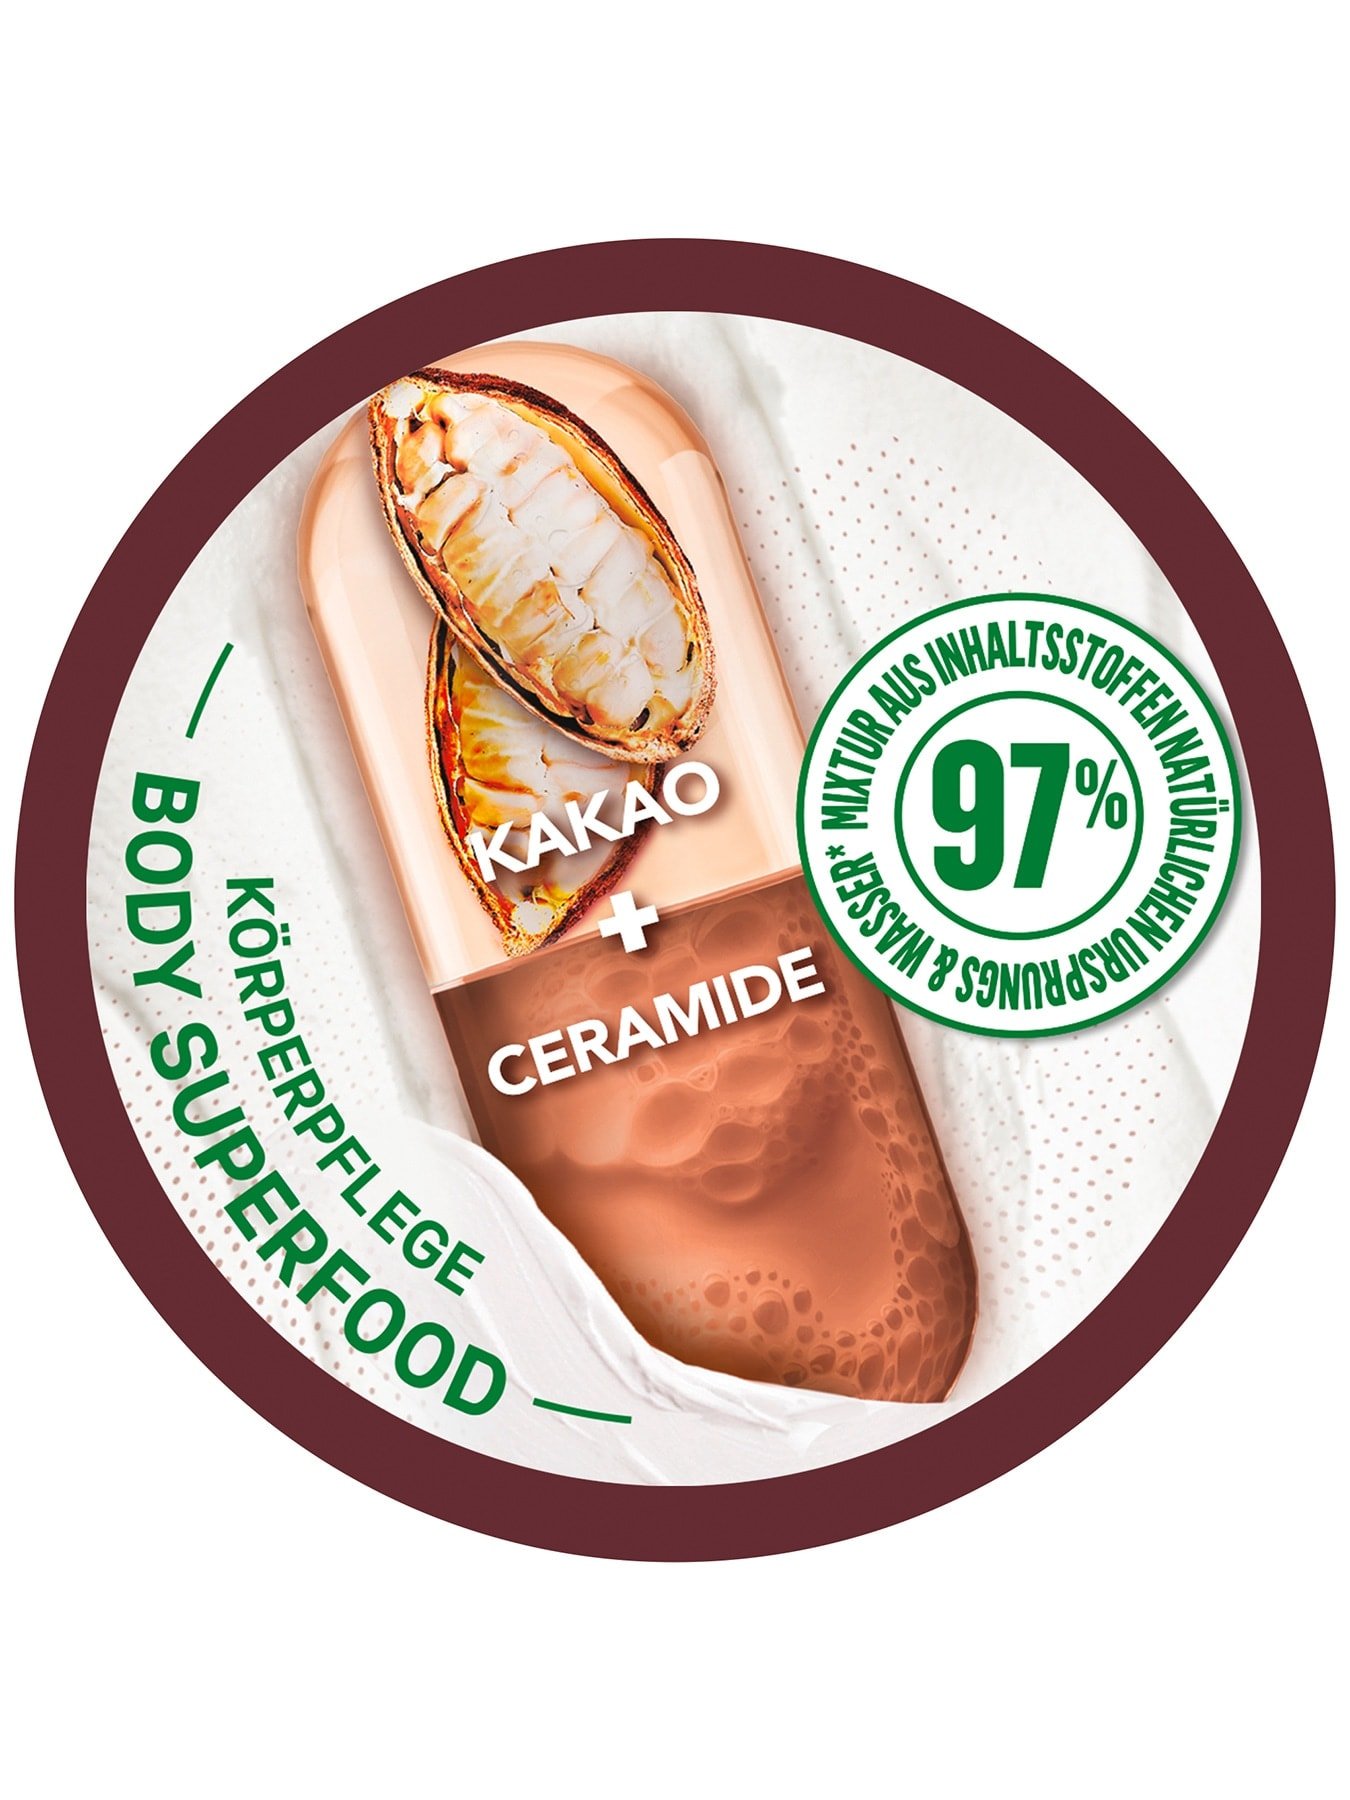 Body Superfood Körperpflege 48h reparierende Body Butter Kakao  - Produktansicht von oben